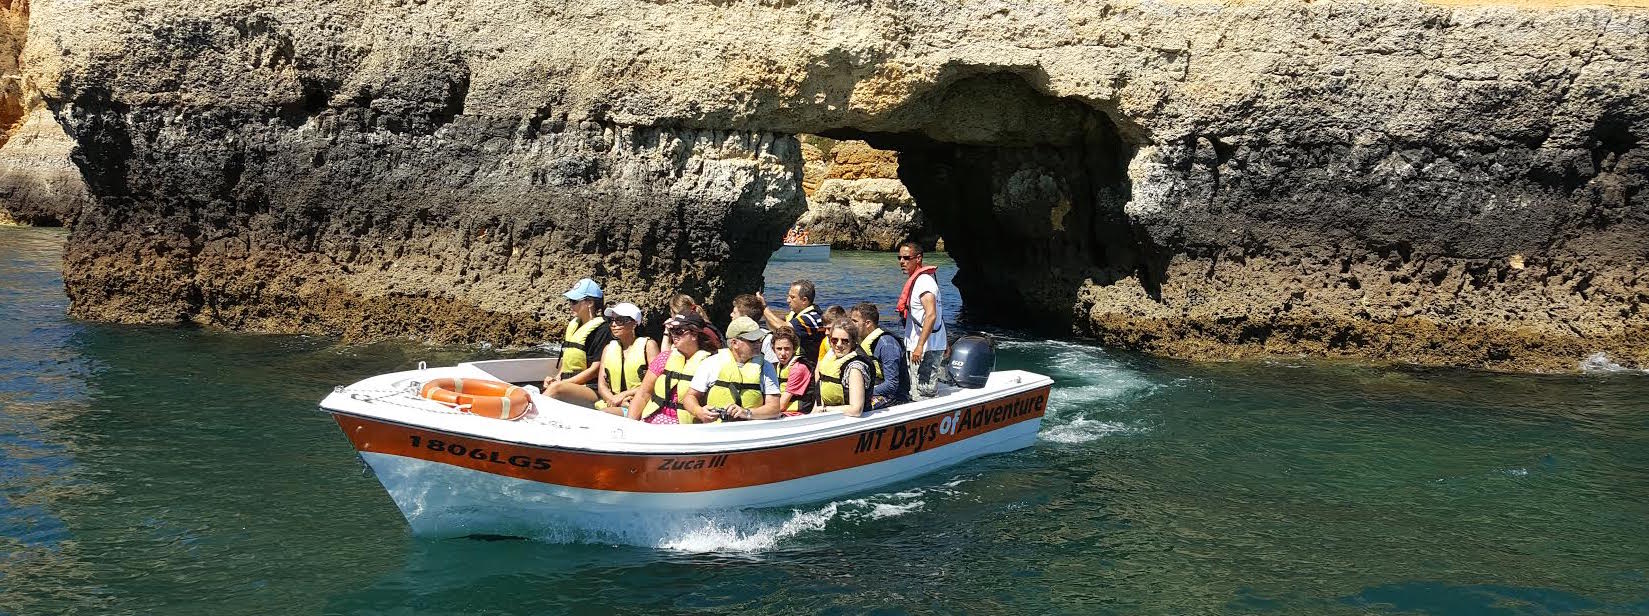 Lagos grotto boat tour
